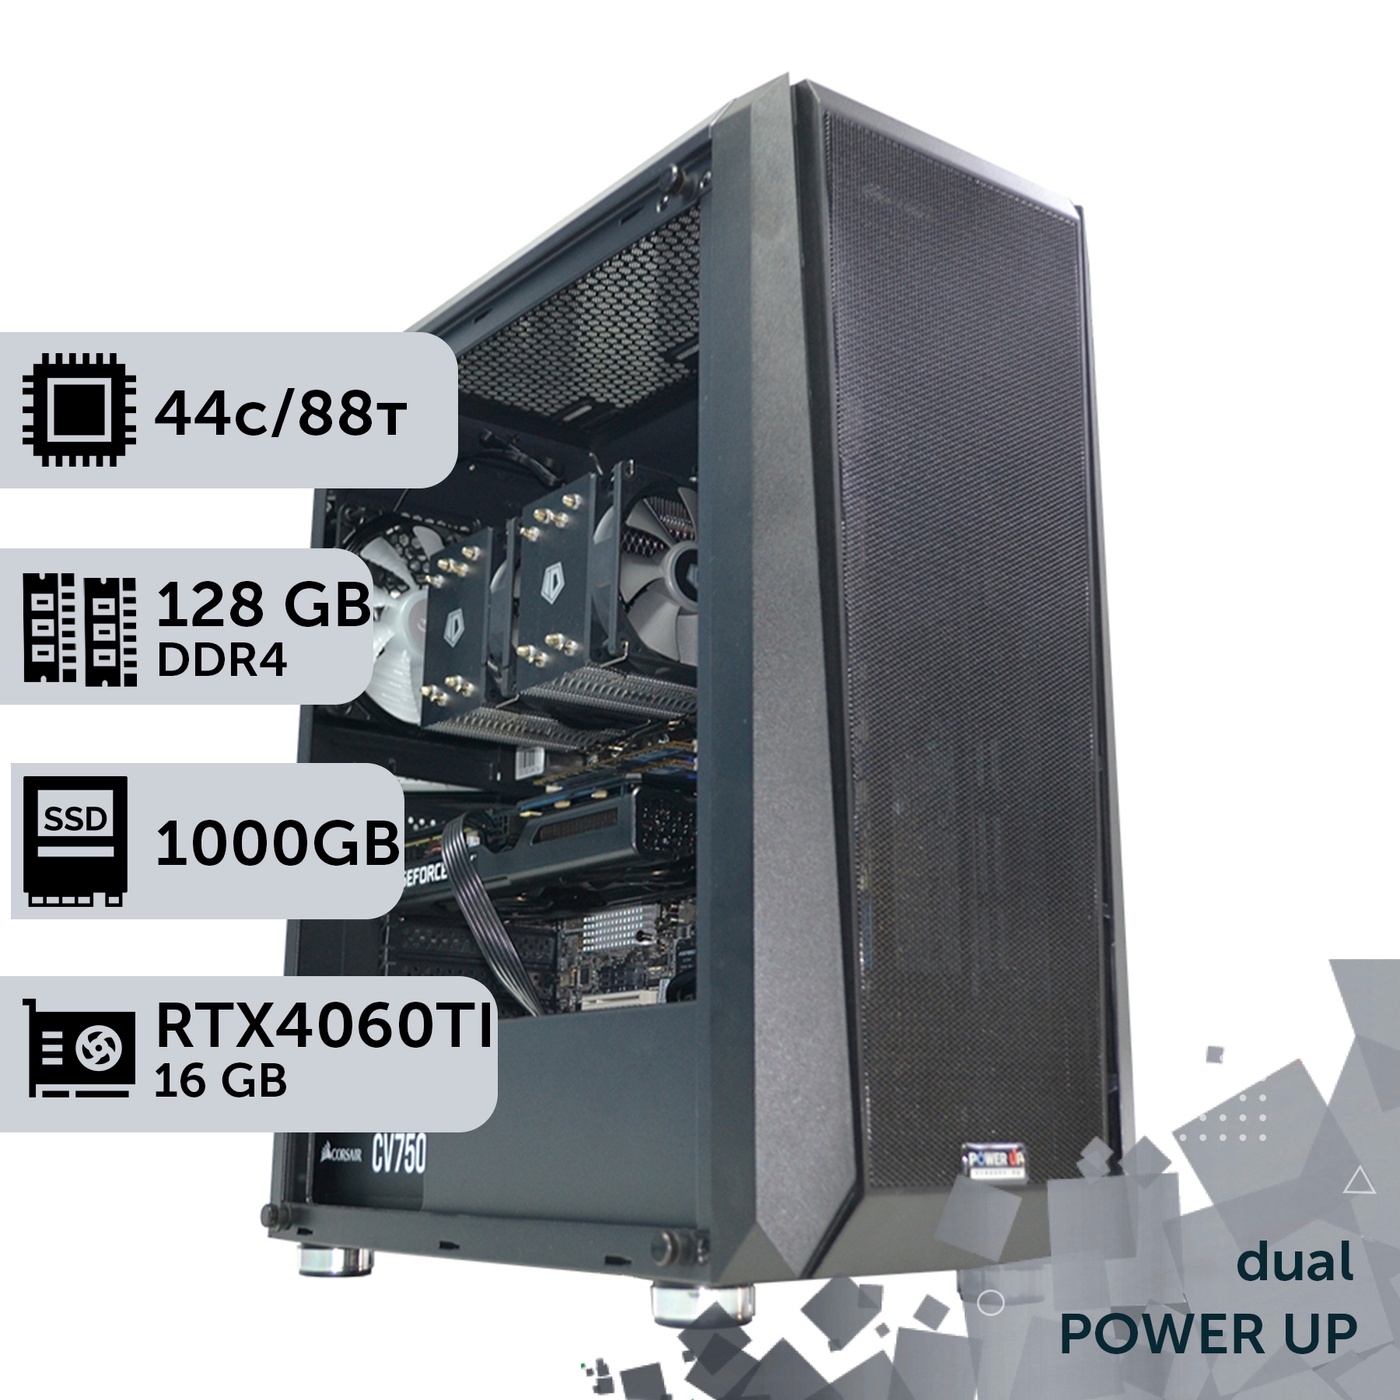 Двухпроцессорная рабочая станция PowerUp #411 Xeon E5 2699 v4 x2/128 GB/SSD 1TB/GeForce RTX 4060Ti 16GB